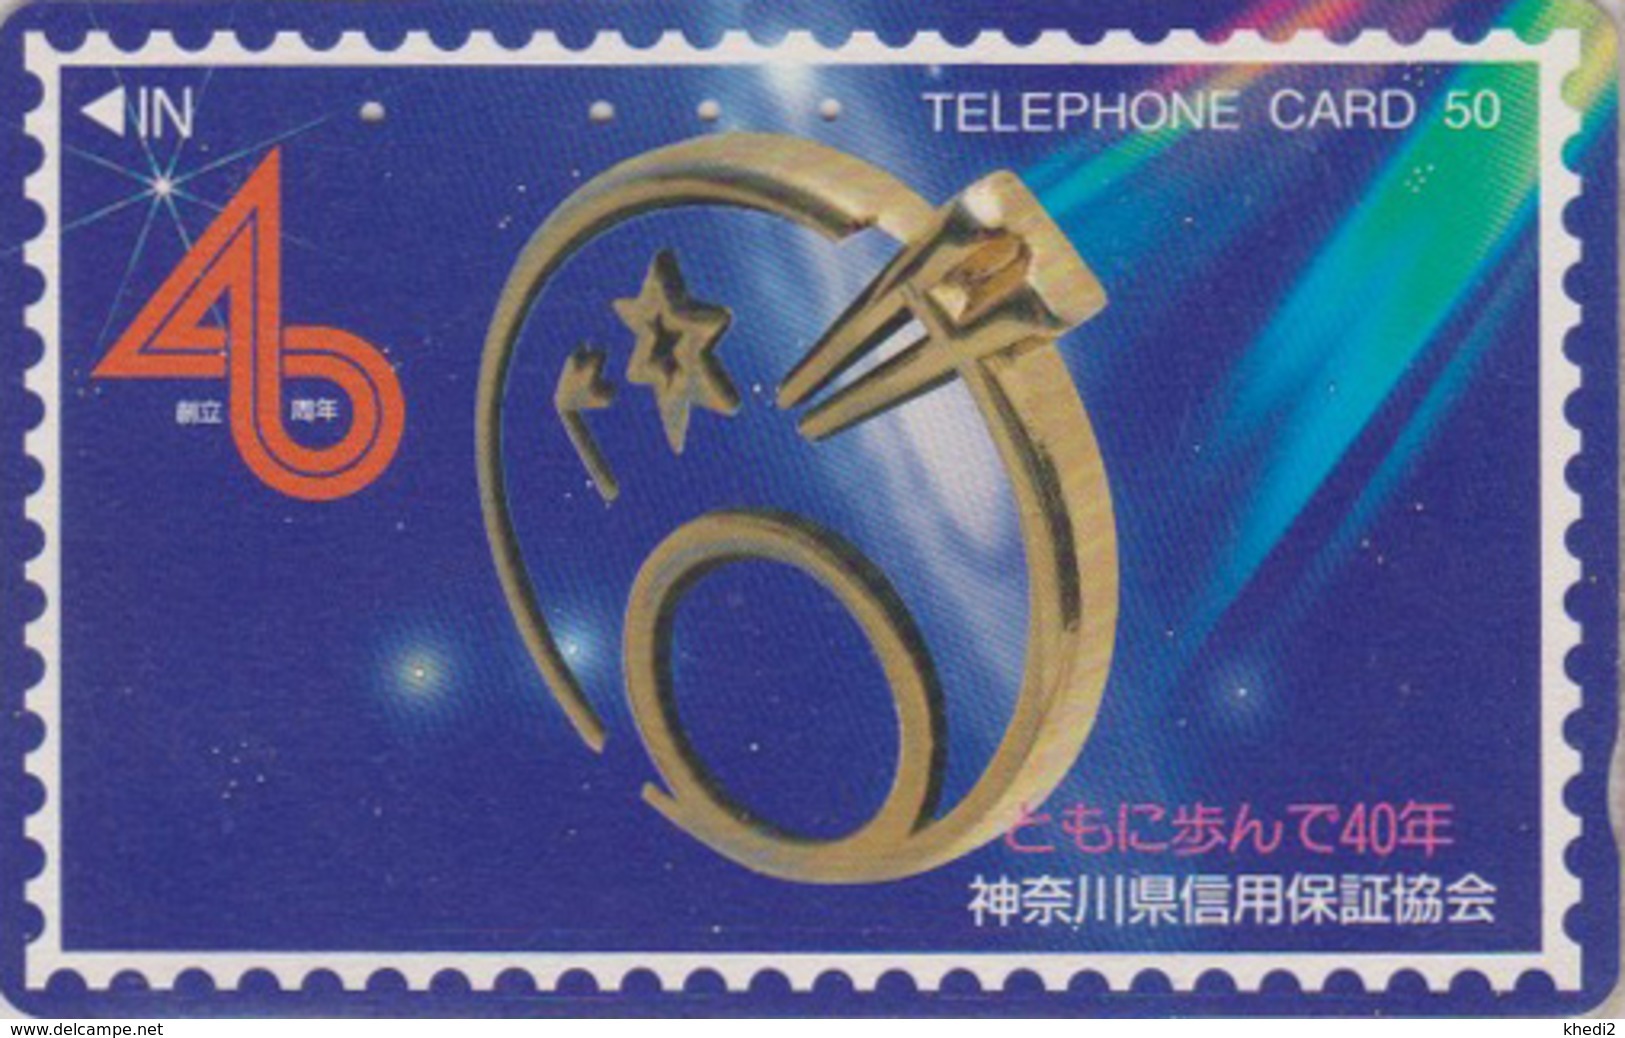 Télécarte Japon / 110-014 - ESPACE Sur TIMBRE - SPACE On STAMP Japan Phonecard - BRIEFMARKE - 105 - Stamps & Coins